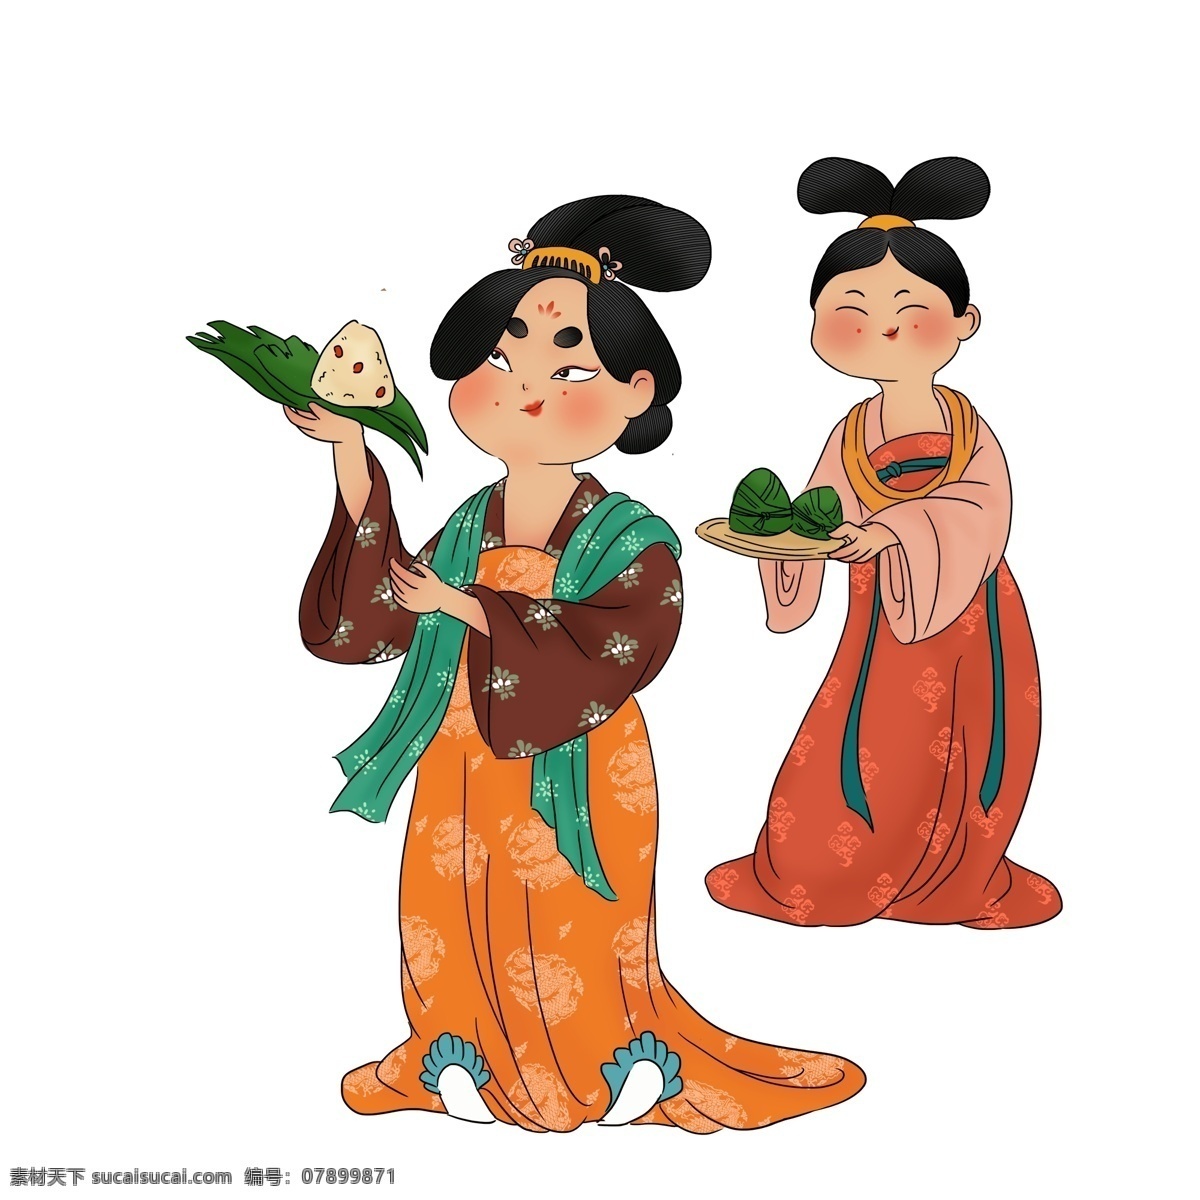 端午节 粽子 古代 女人 中国风 古风 手绘 复古 人物 妇女 传统节日 中华传统 五月初五